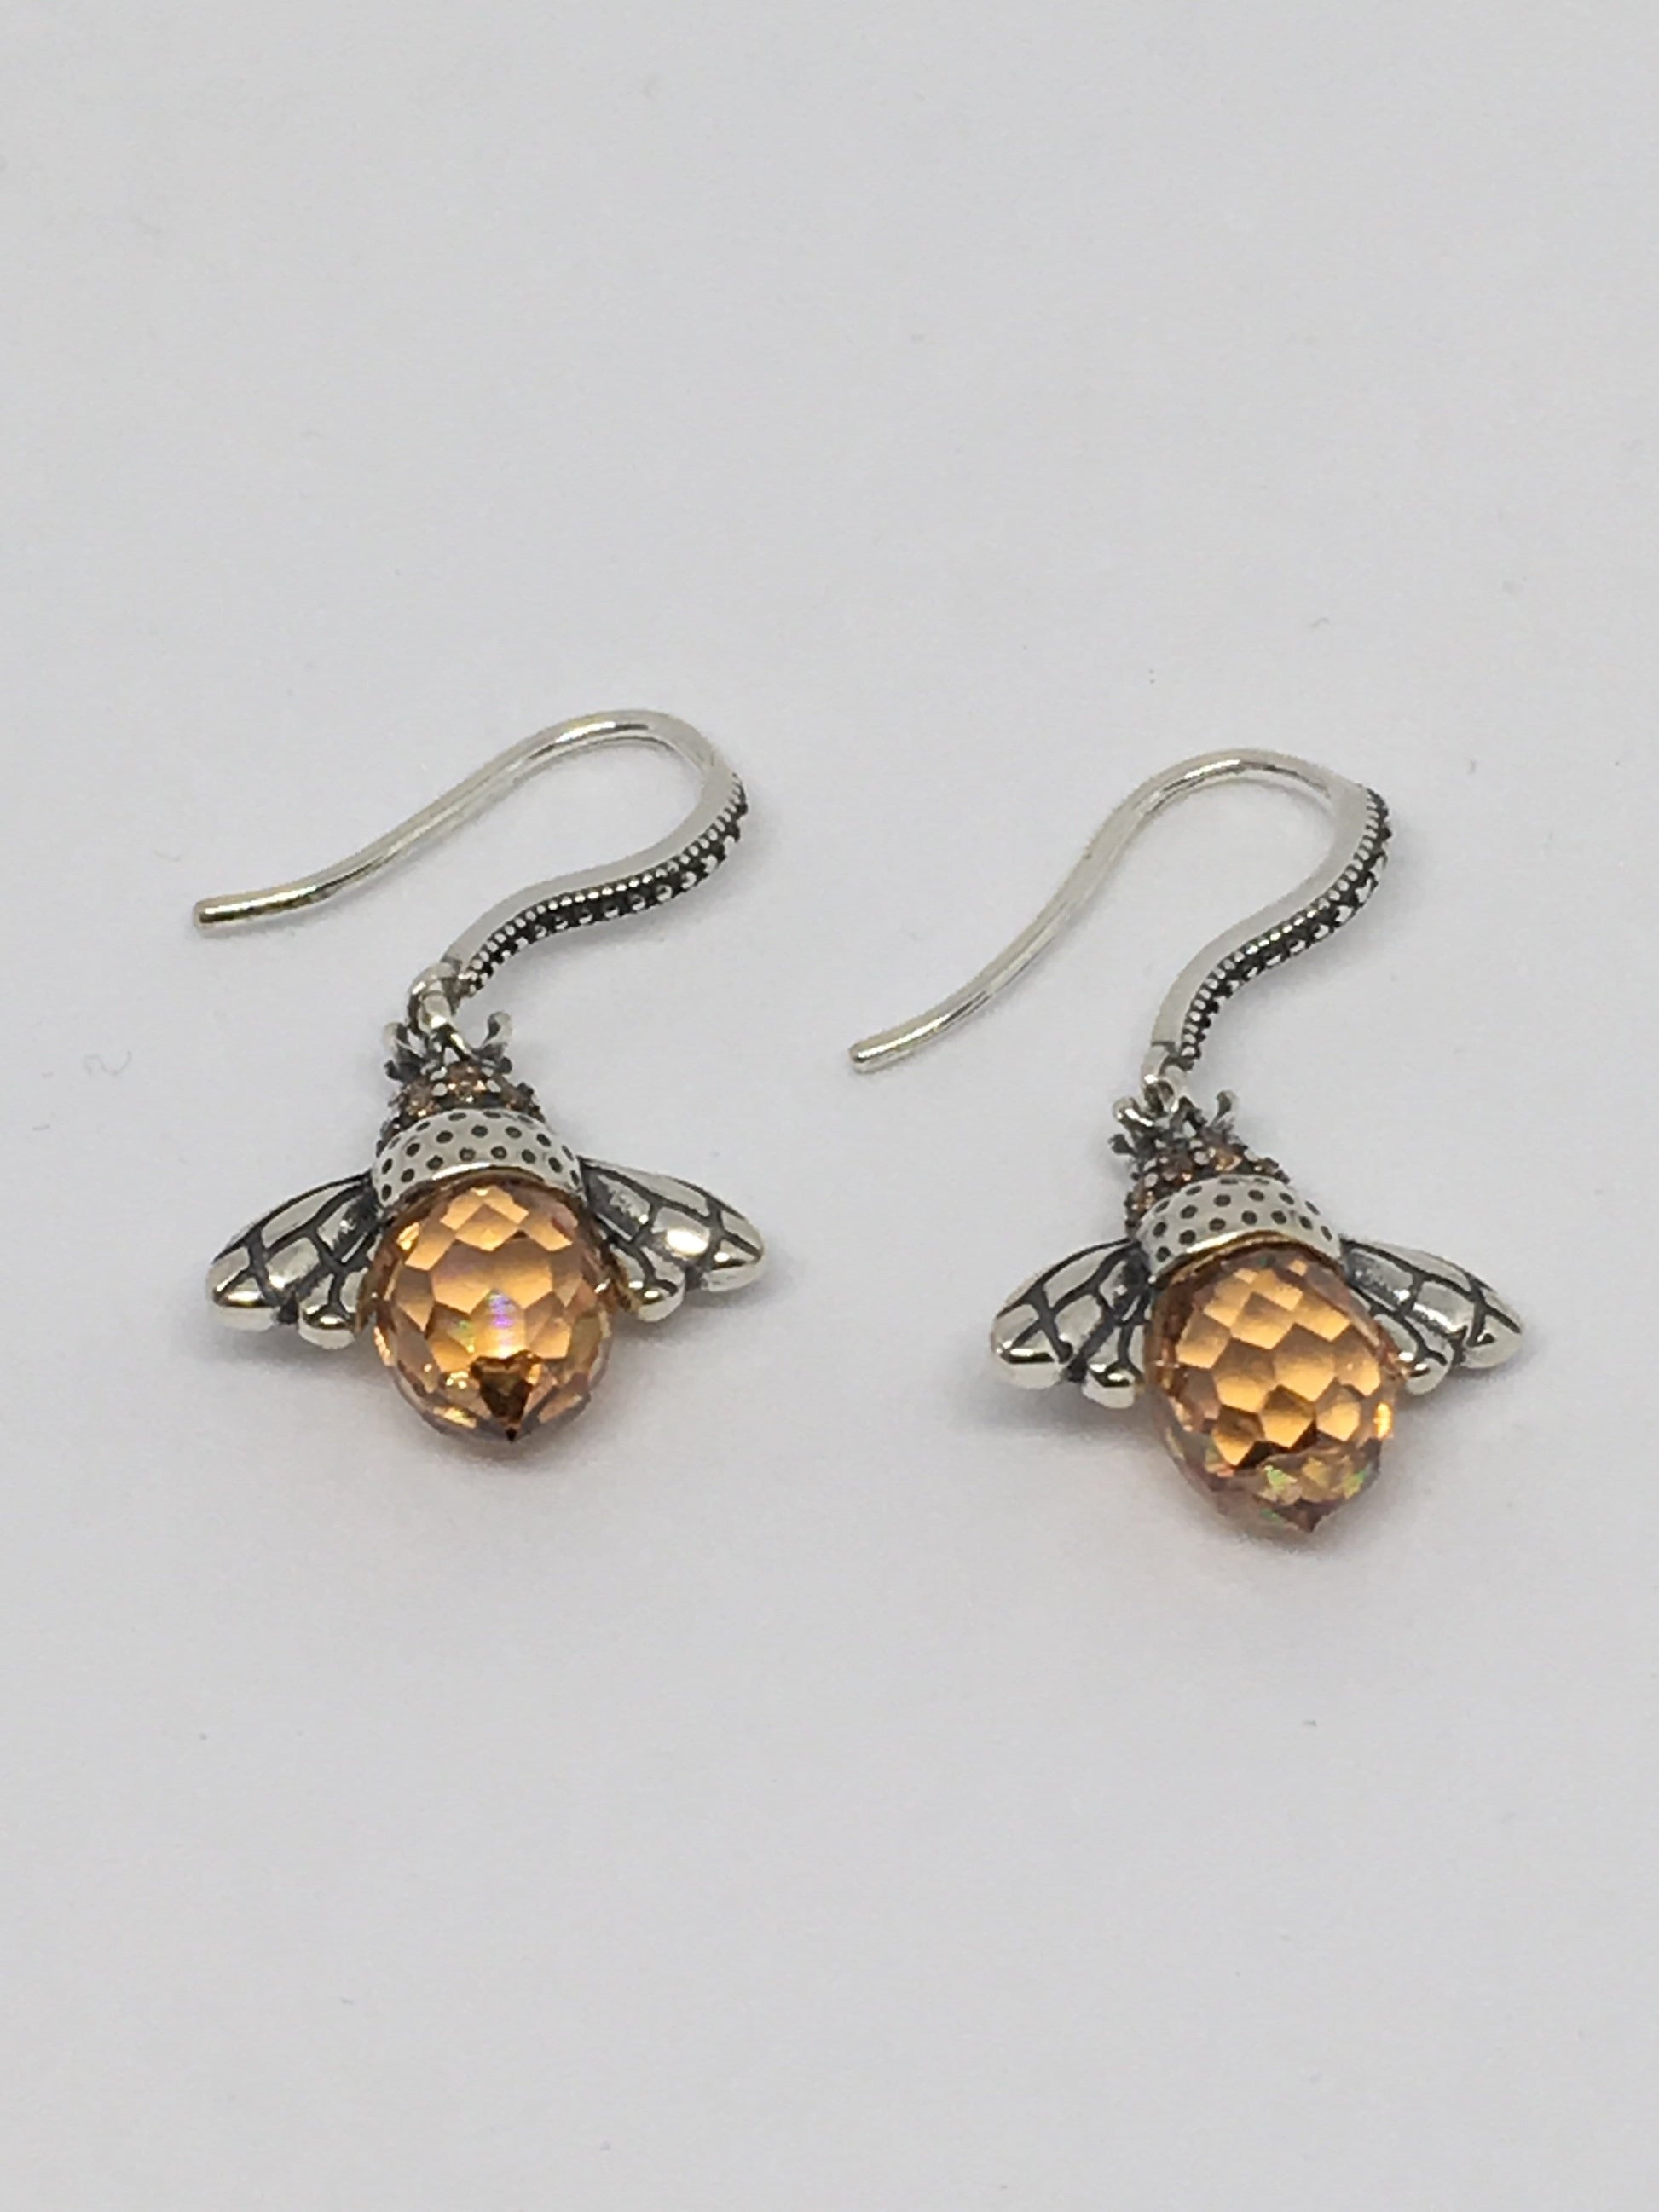 Earrings Sterling Silver Bee Earrings Jewelz Galore Silver Bee Earrings | Jewelz Galore | Jewellery